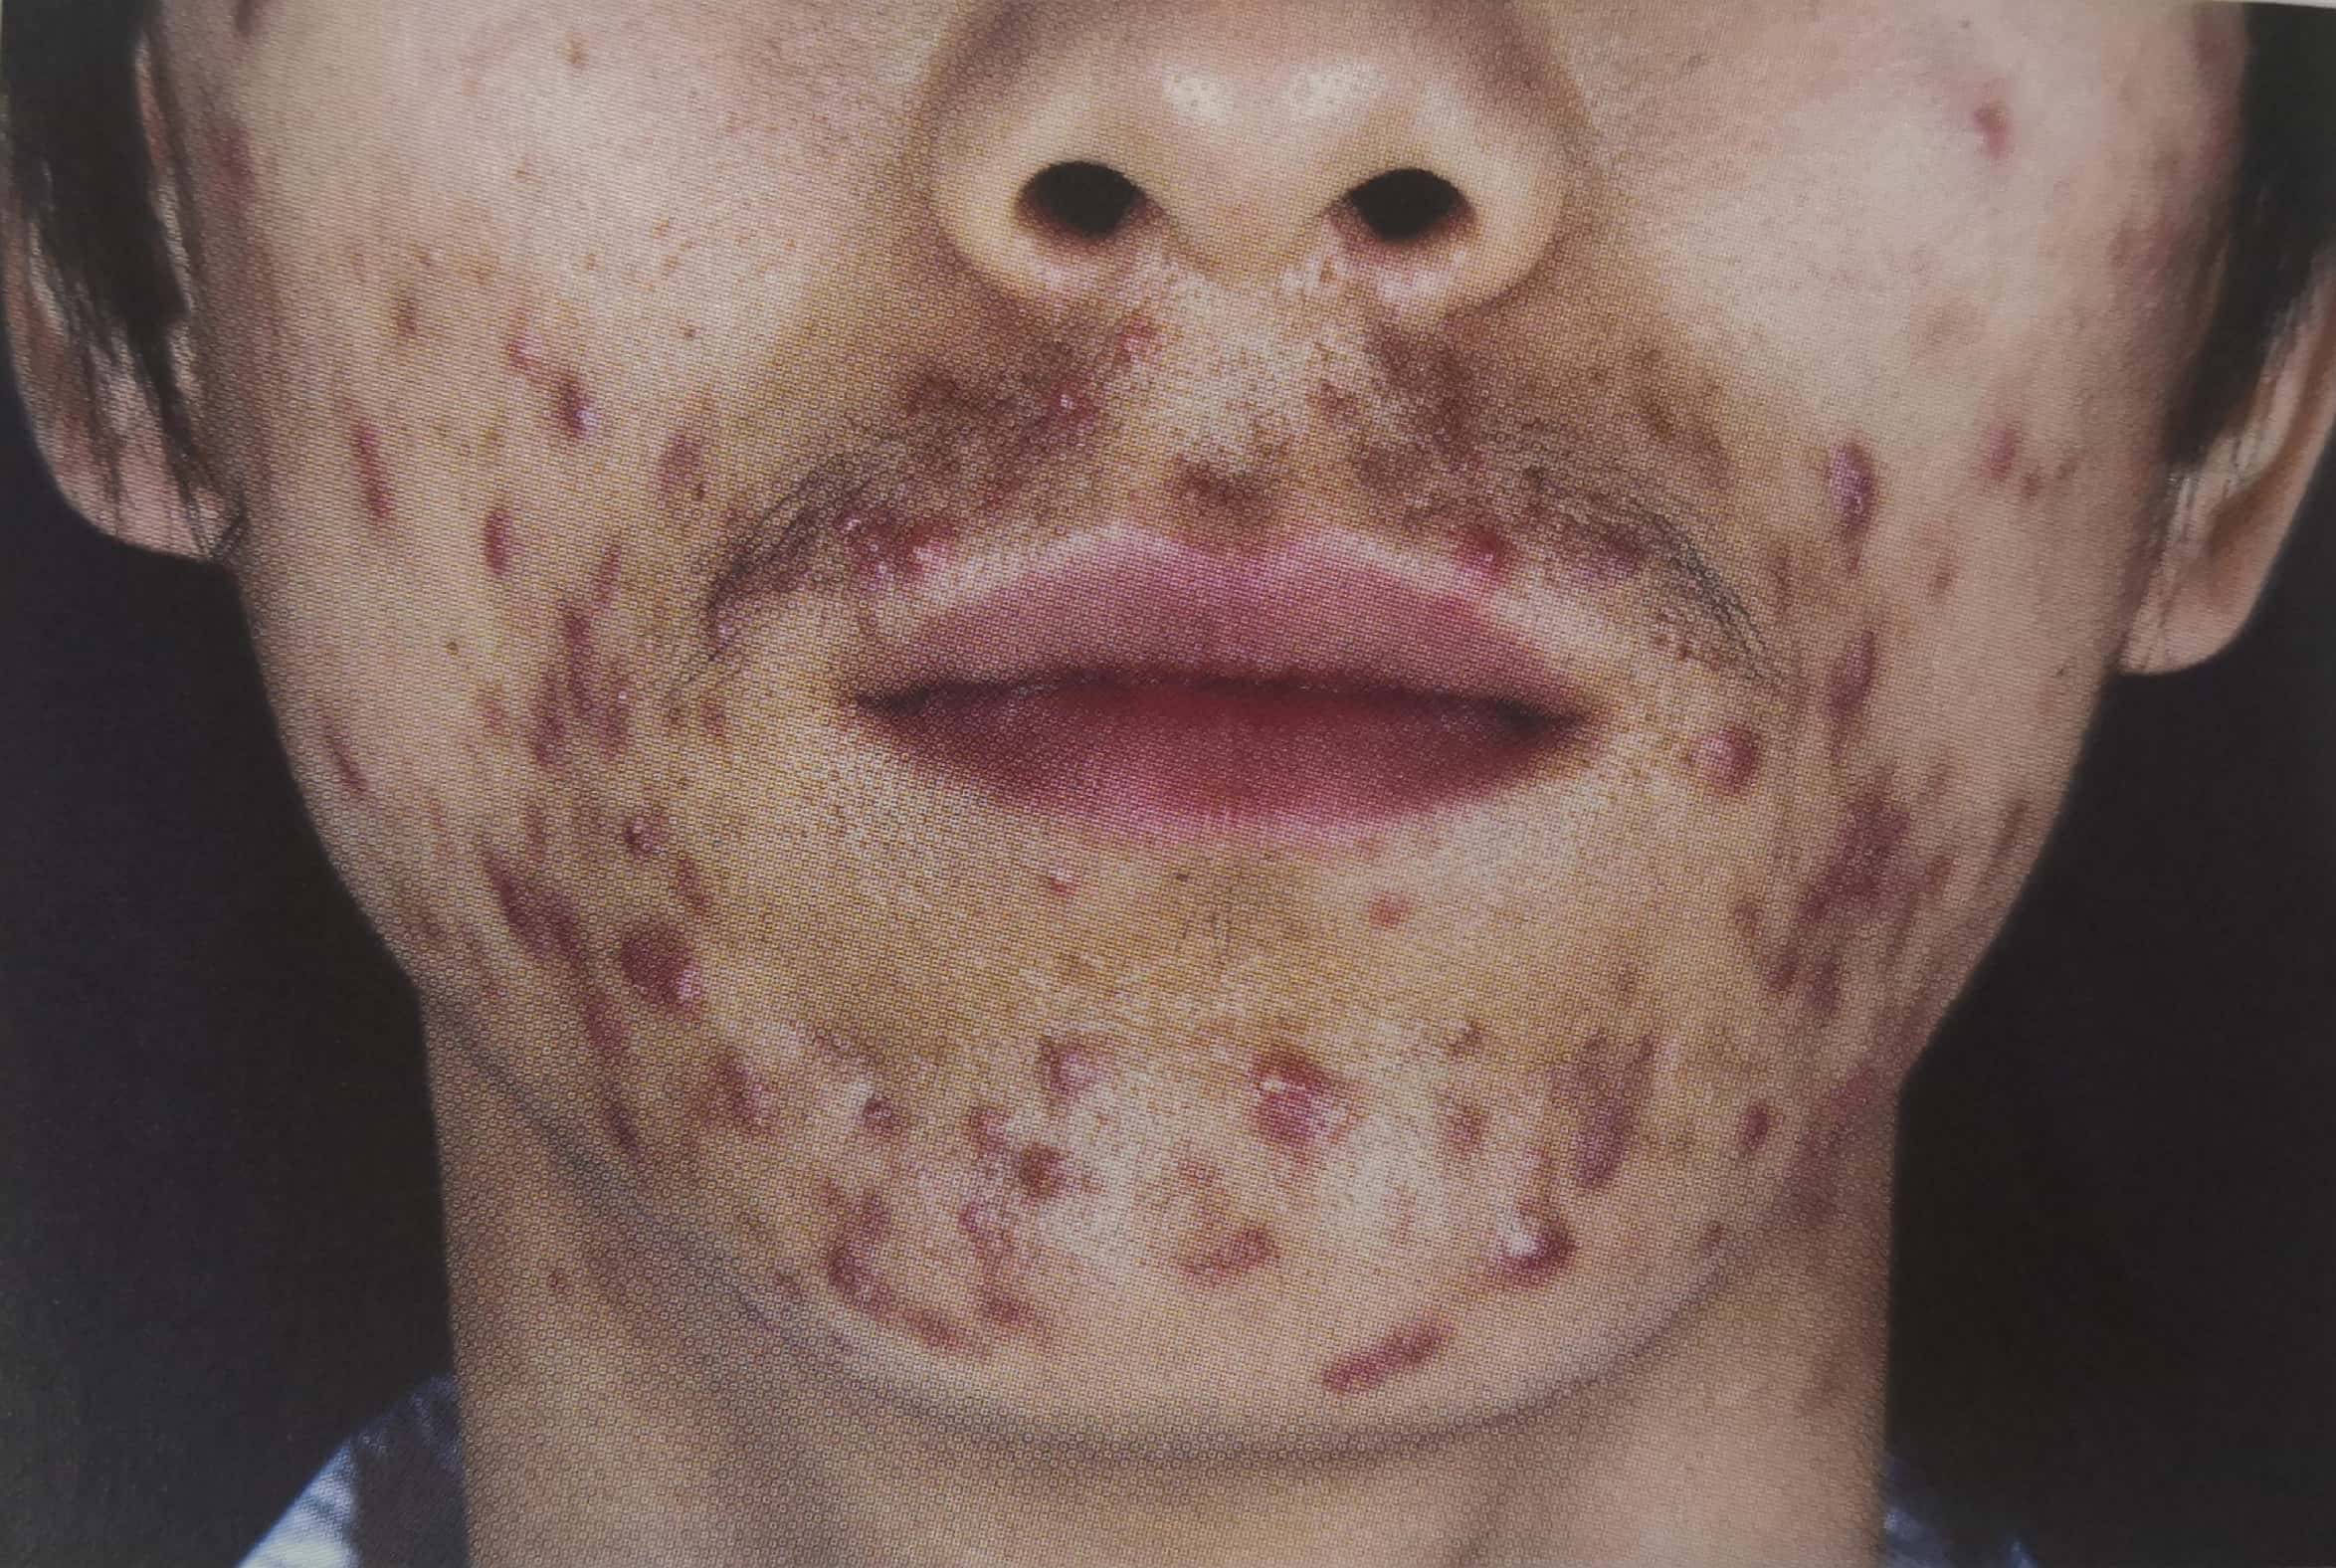 两颊,口周,下巴可见暗红色丘疹,部分丘疹顶端有脓疱